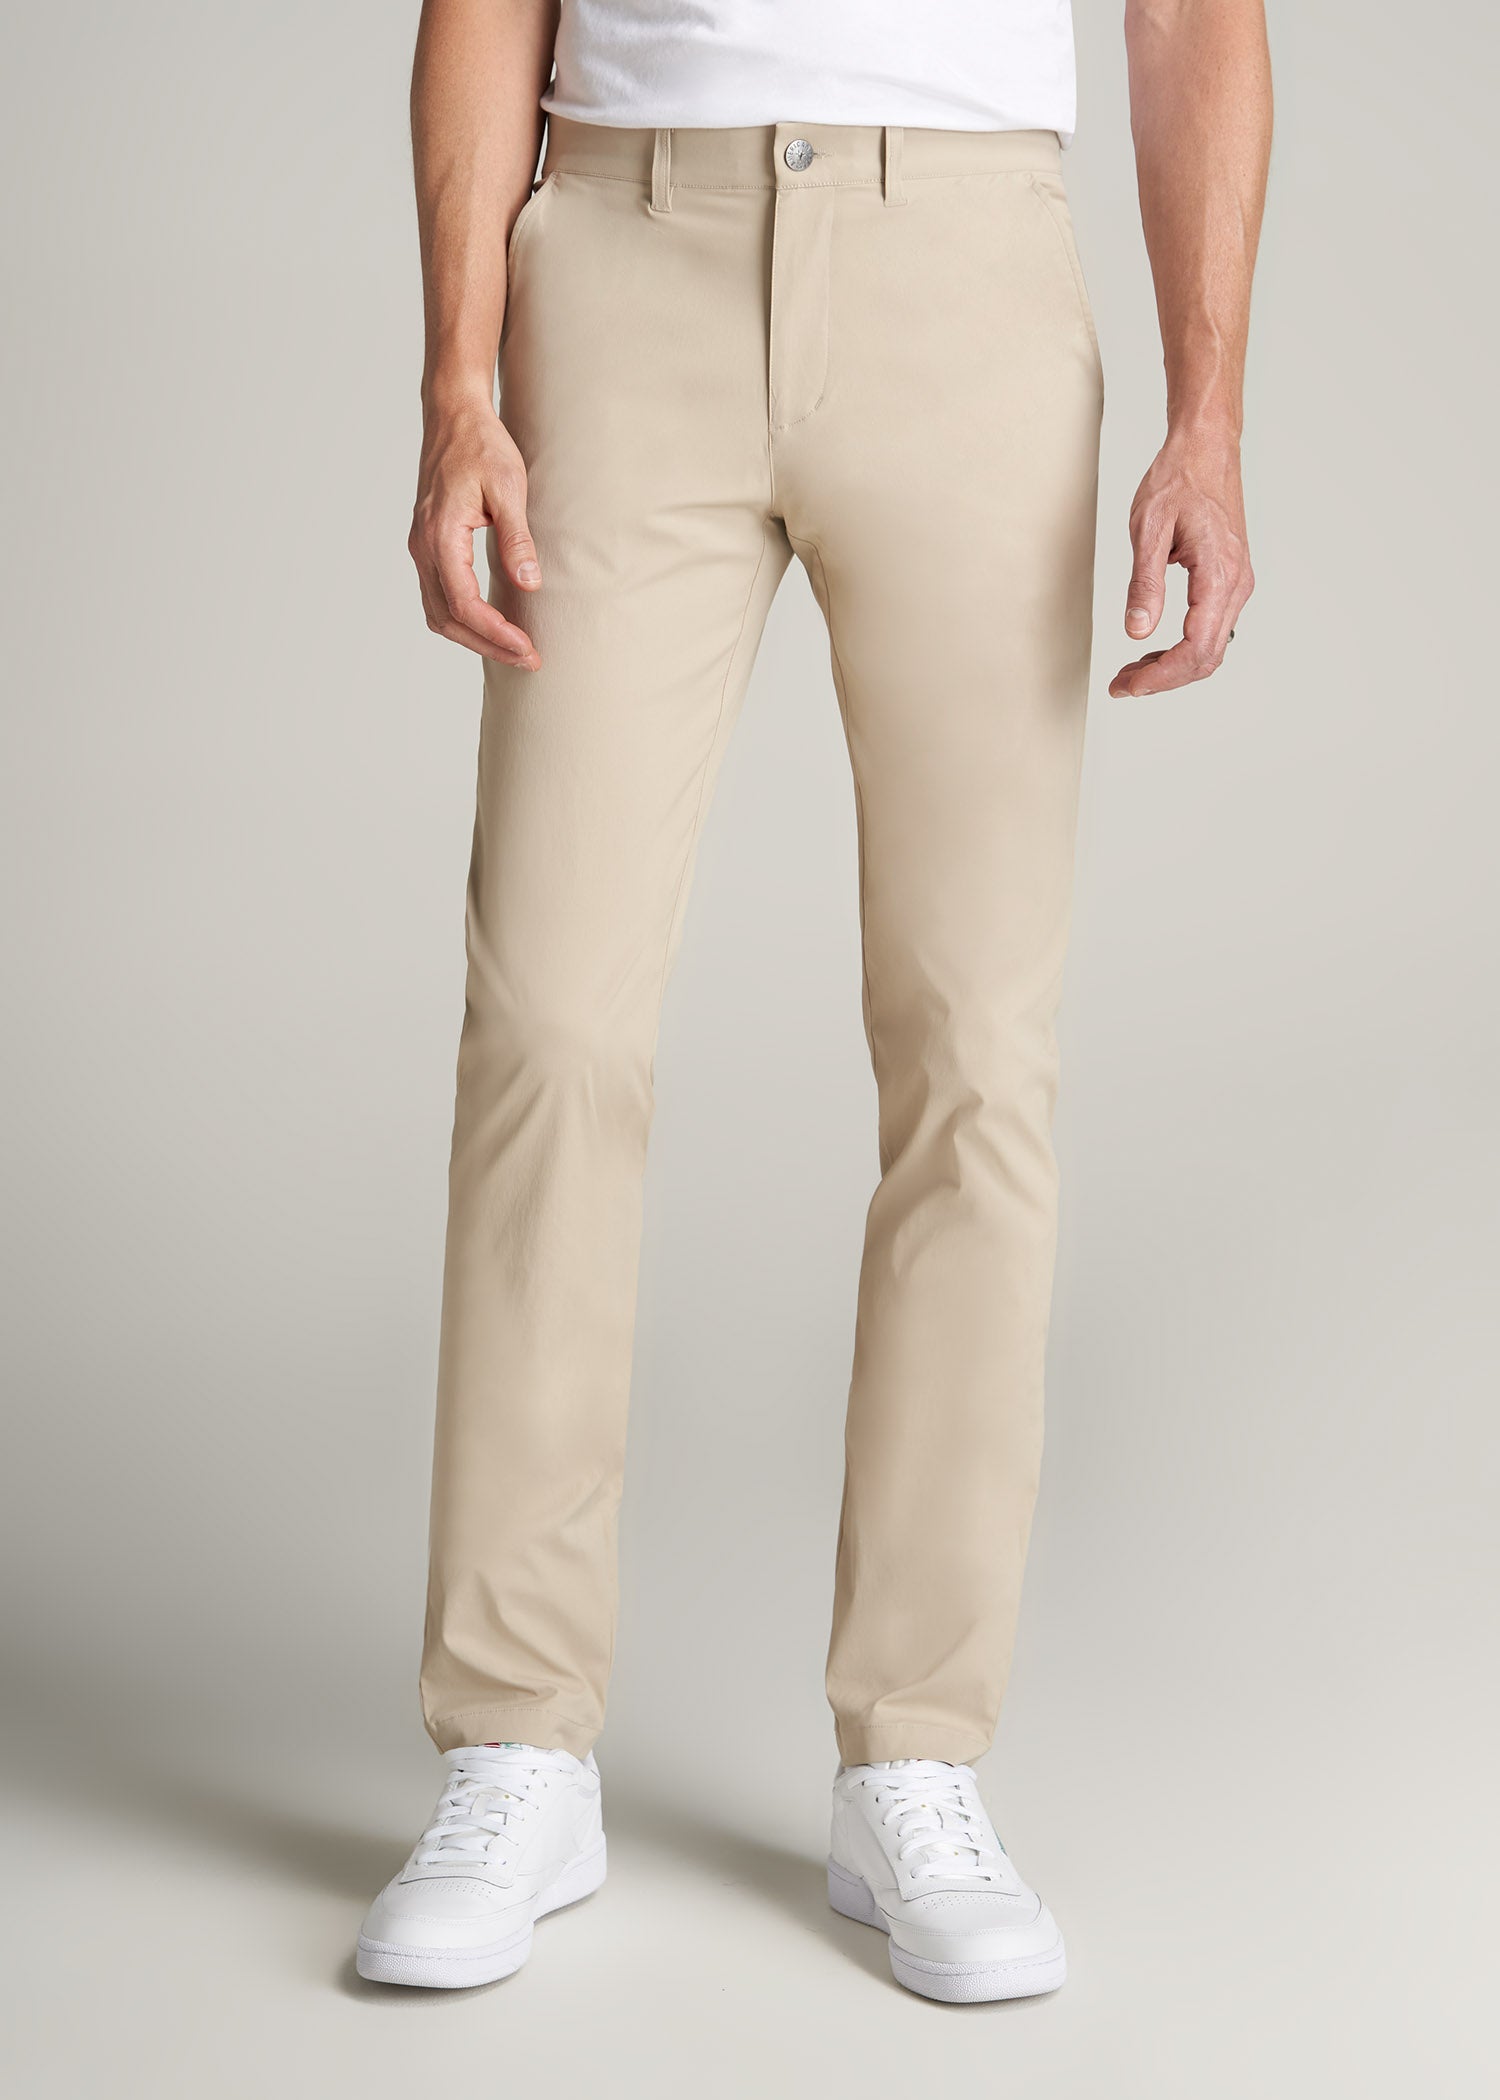 Men's Tall Light Khaki Pants: Traveler Chino Pants